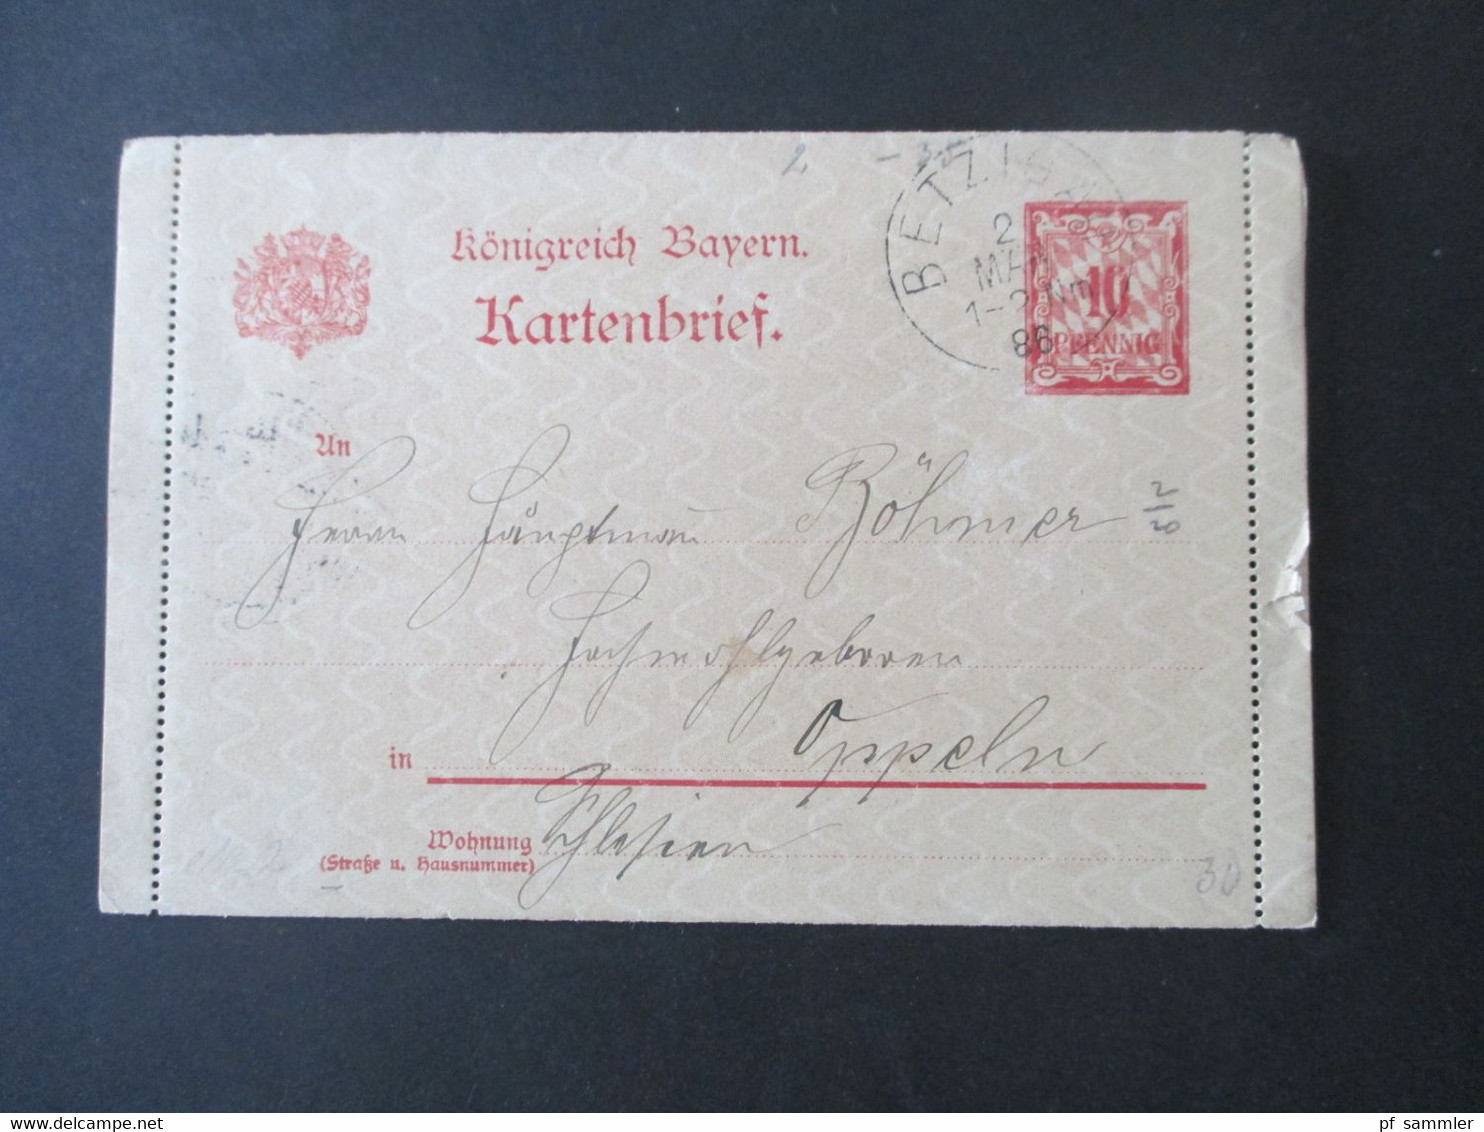 AD Bayern Ganzsachen Posten ab ca. 1875 insgesamt 30 Stück. Stöberposten! Auch Bahnpost Stp. und 1x Doppelkarte